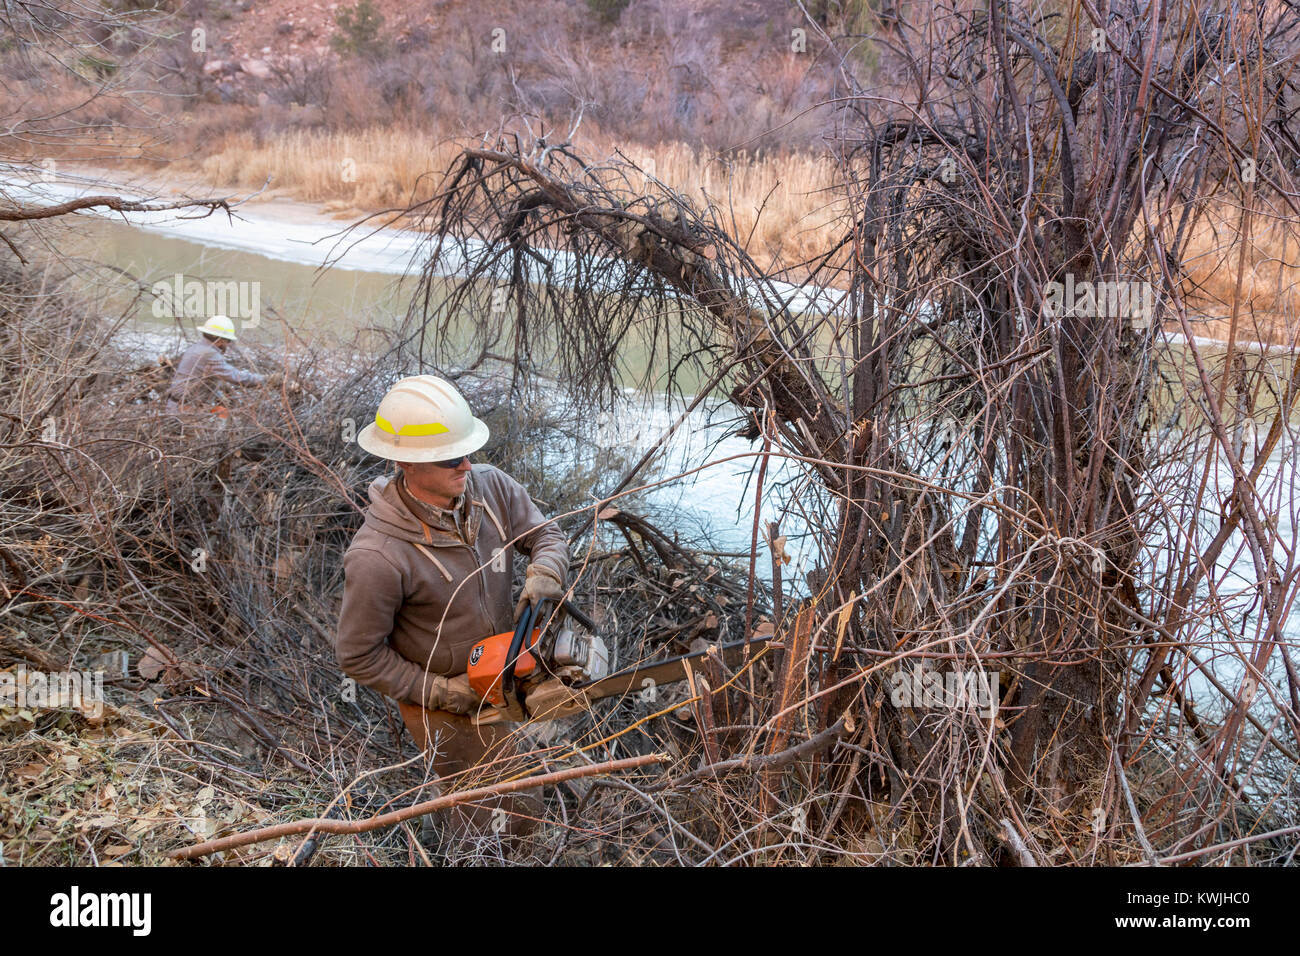 Gateway, Colorado - Arbeiter für das Büro des Land-Managements invasive tamarisken von den Ufern der Dolores River entfernen. Tamarisken sind ein großes Pro Stockfoto